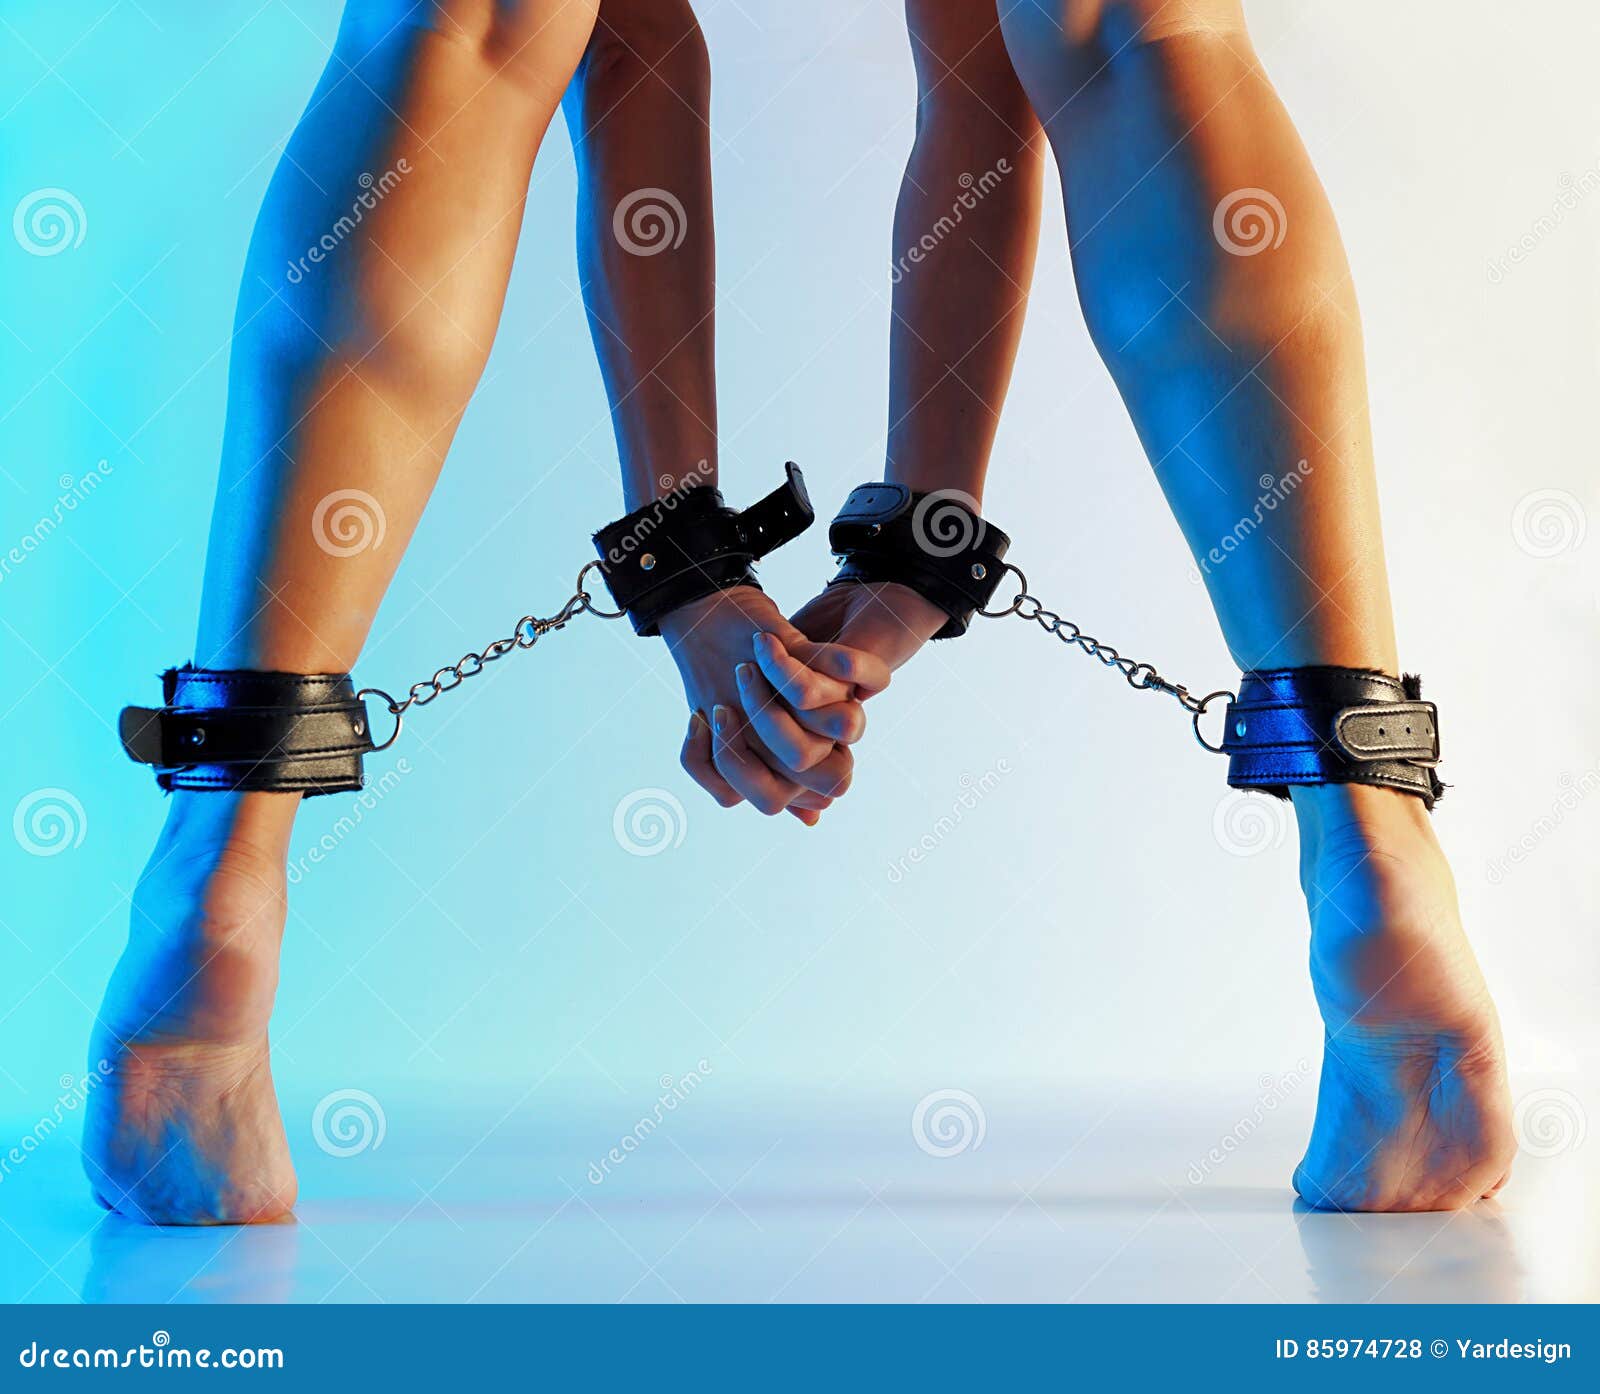 Handcuffs With Bound Feet